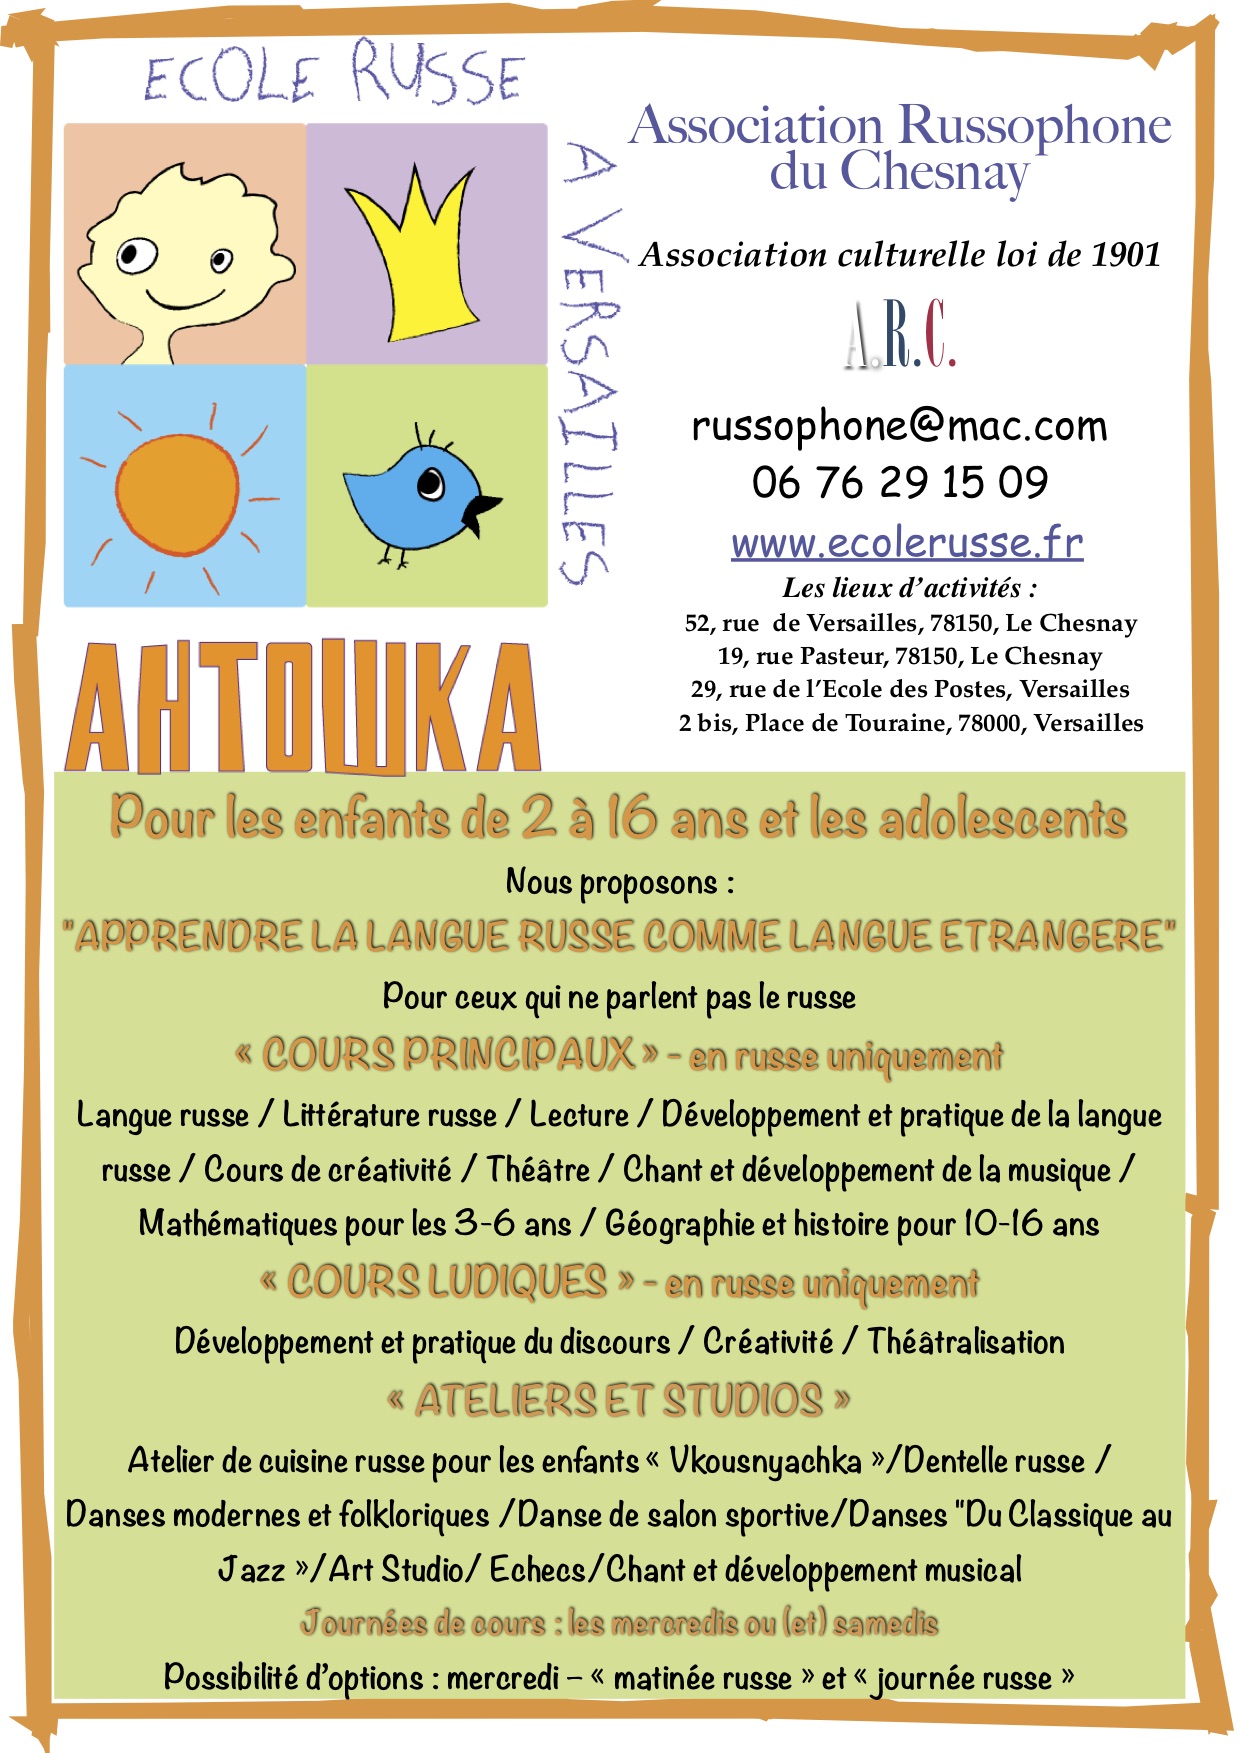 You are currently viewing Ecole russe « ANTOCHKA » Pour les enfants bilingues de 2 à 16 ans